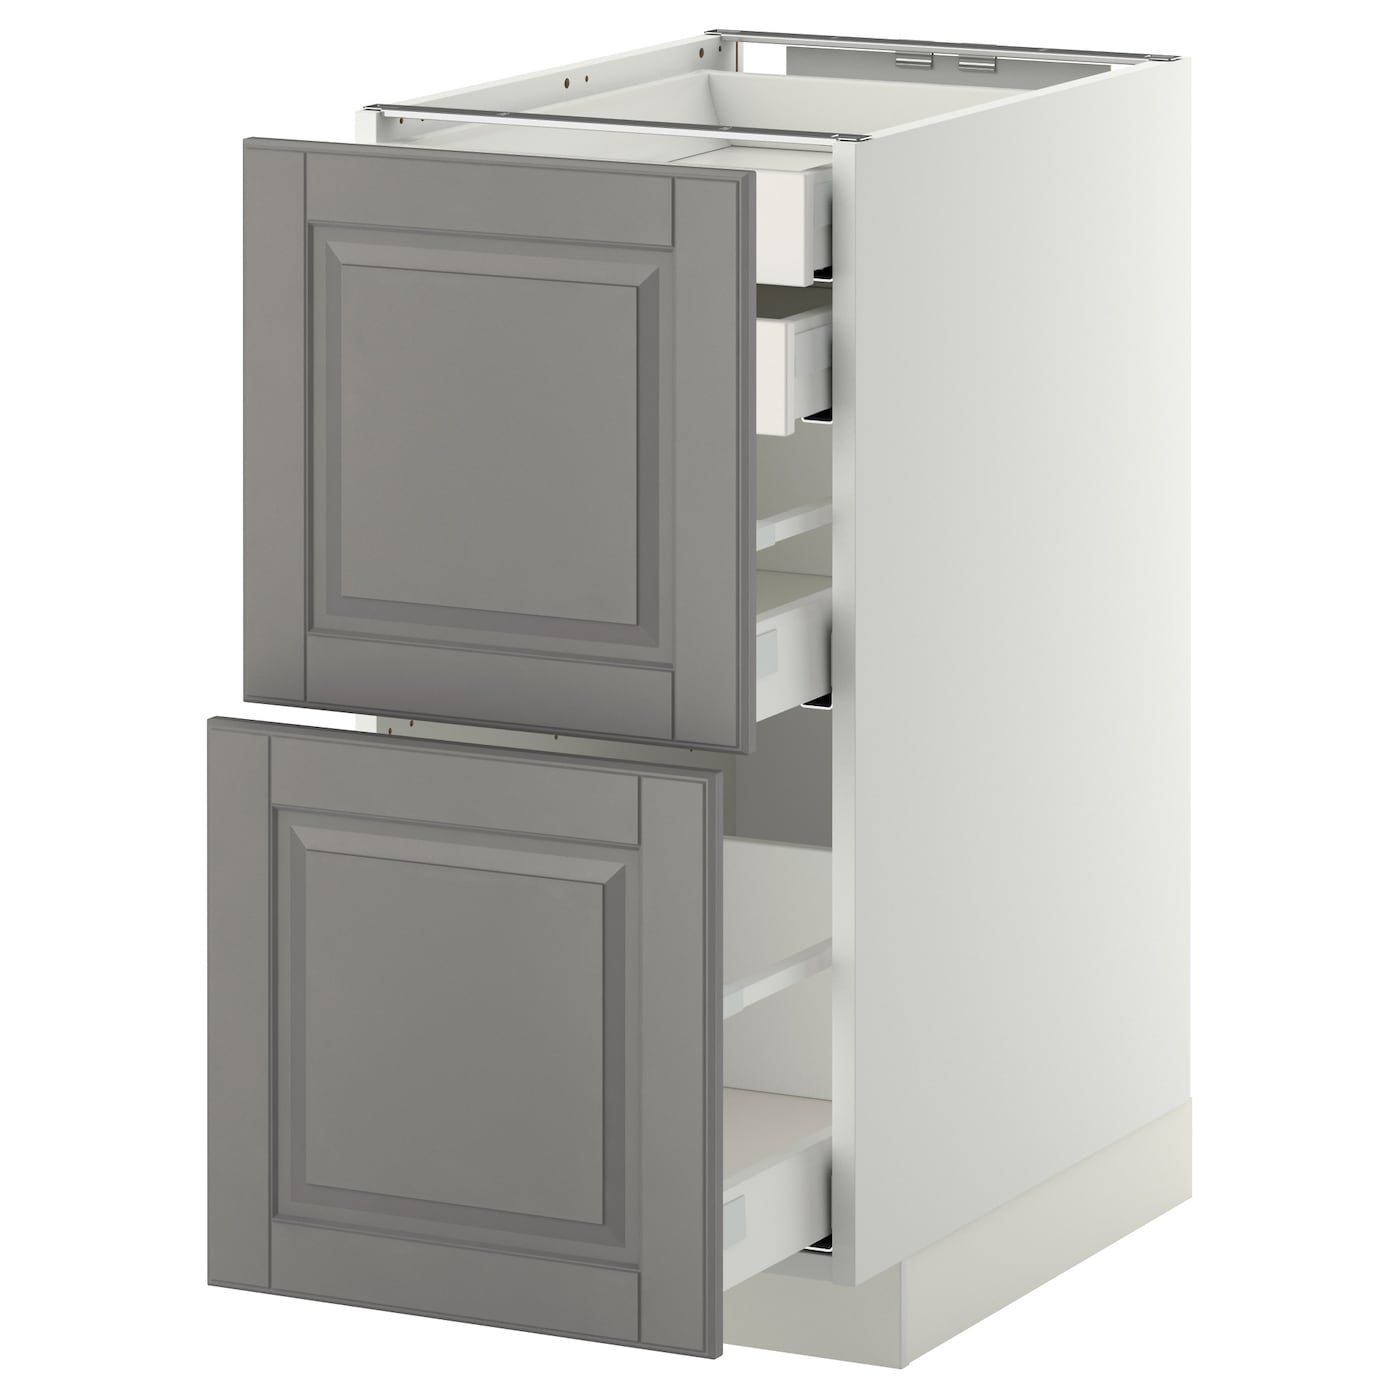 Напольный кухонный шкаф  - IKEA METOD MAXIMERA, 88x61,9x40см, белый/серый, МЕТОД МАКСИМЕРА ИКЕА